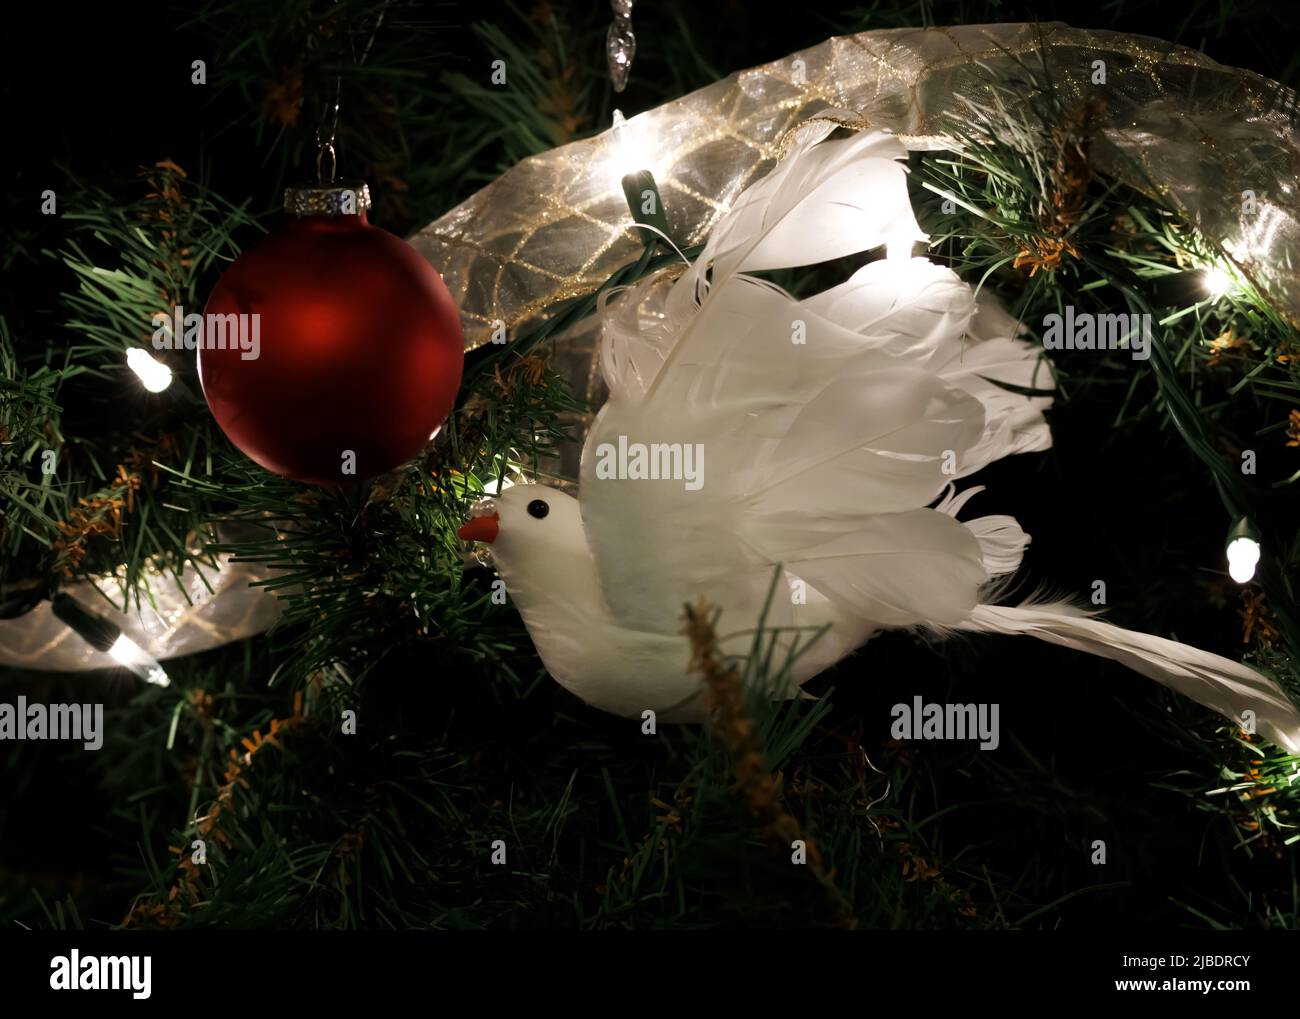 escena de decoración de navidad con una paloma blanca en un árbol de navidad con luces de navidad y una bola roja de navidad Foto de stock